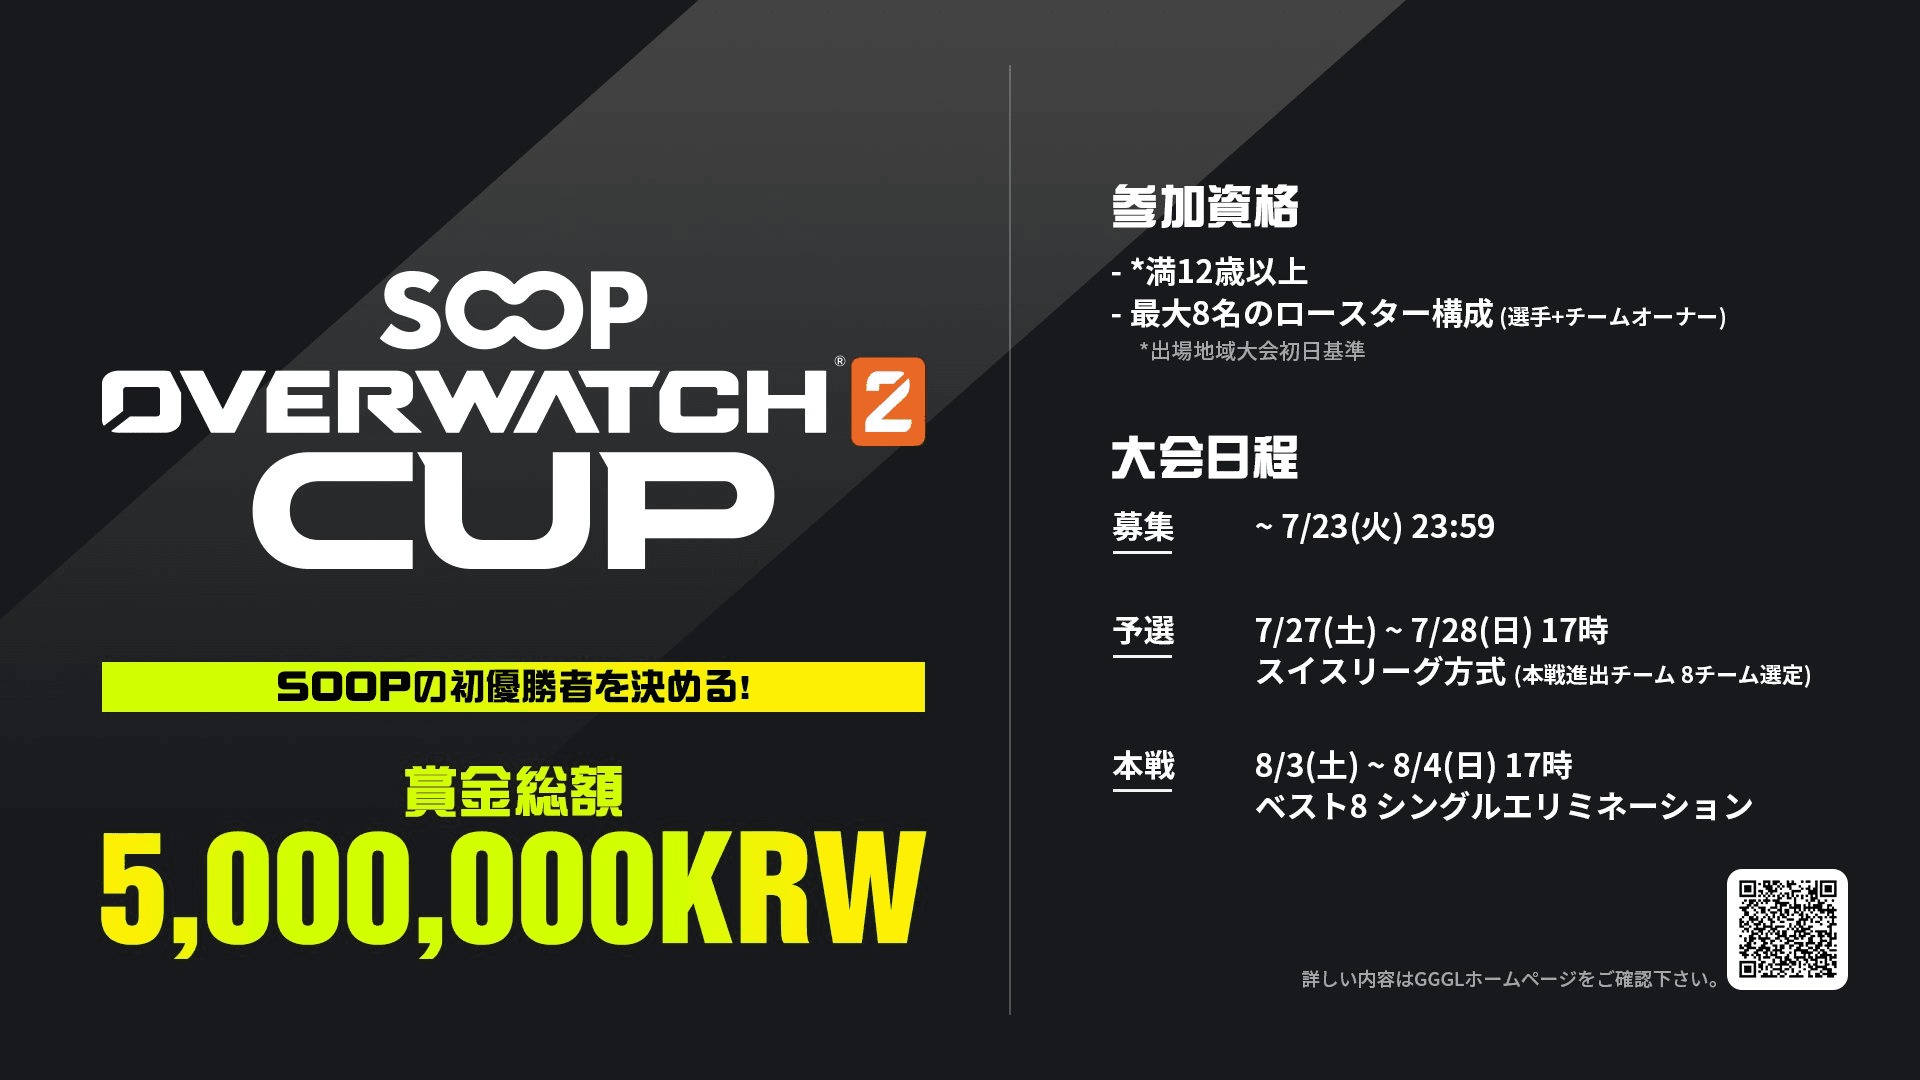  SOOP Overwatch 2 CUP feature image